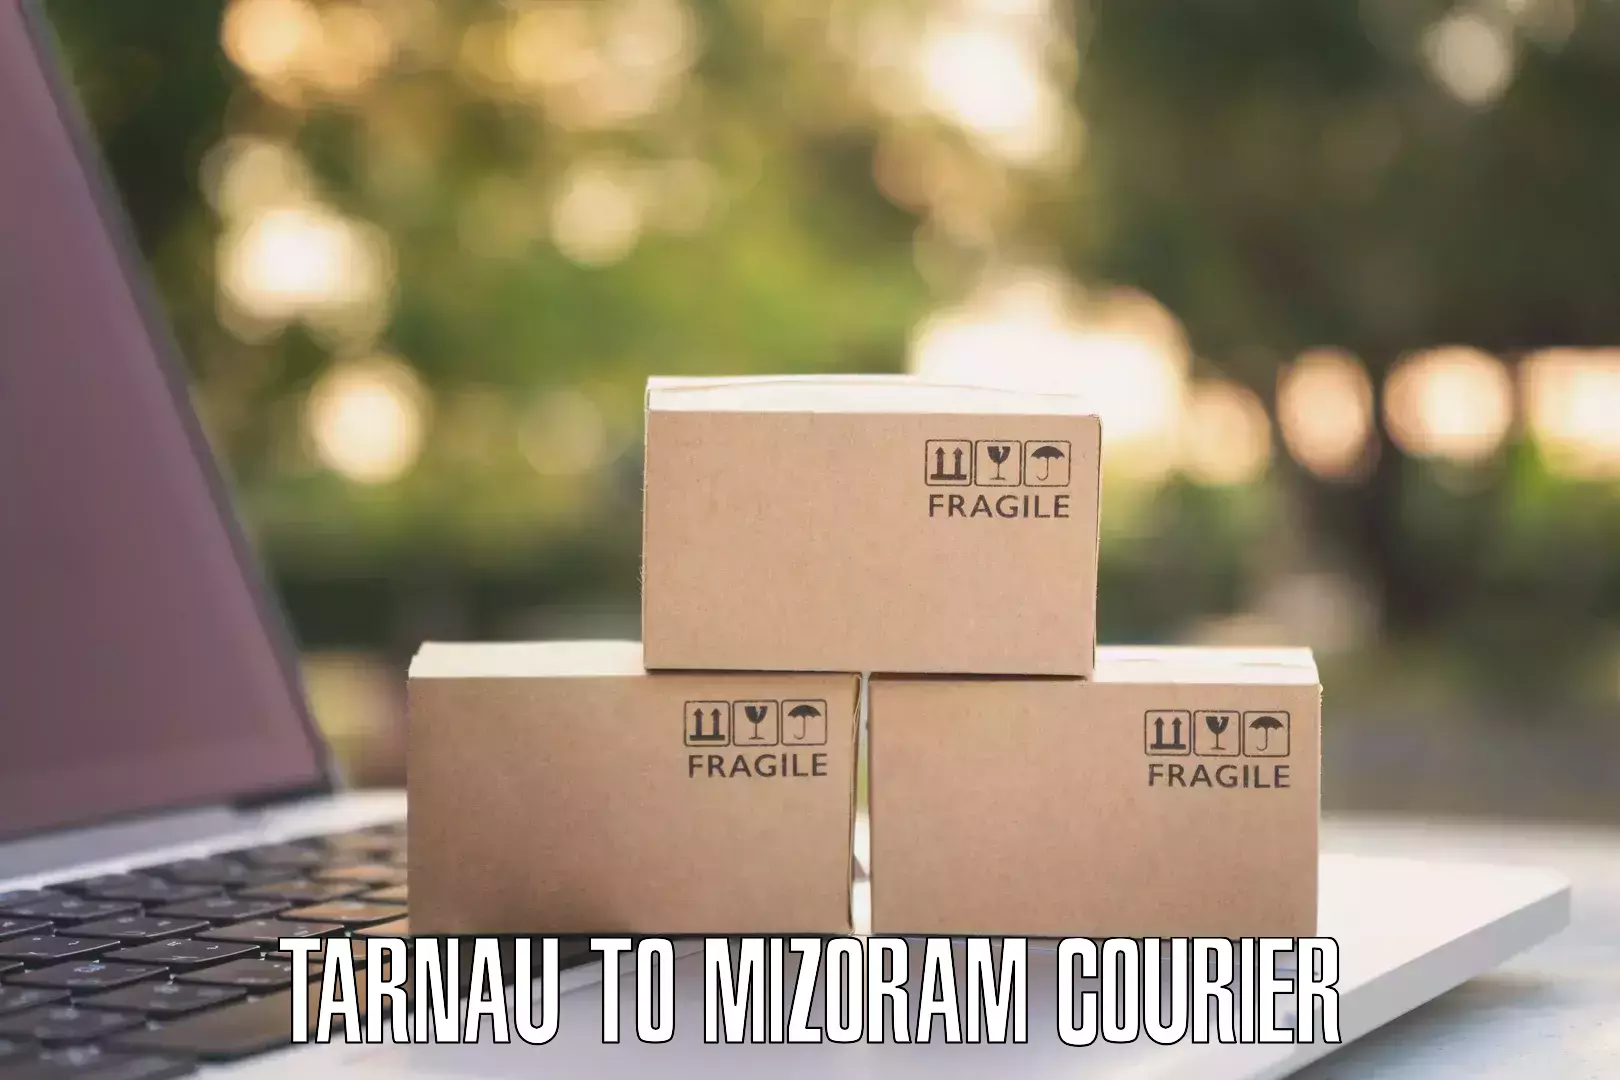 Residential courier service Tarnau to Mizoram